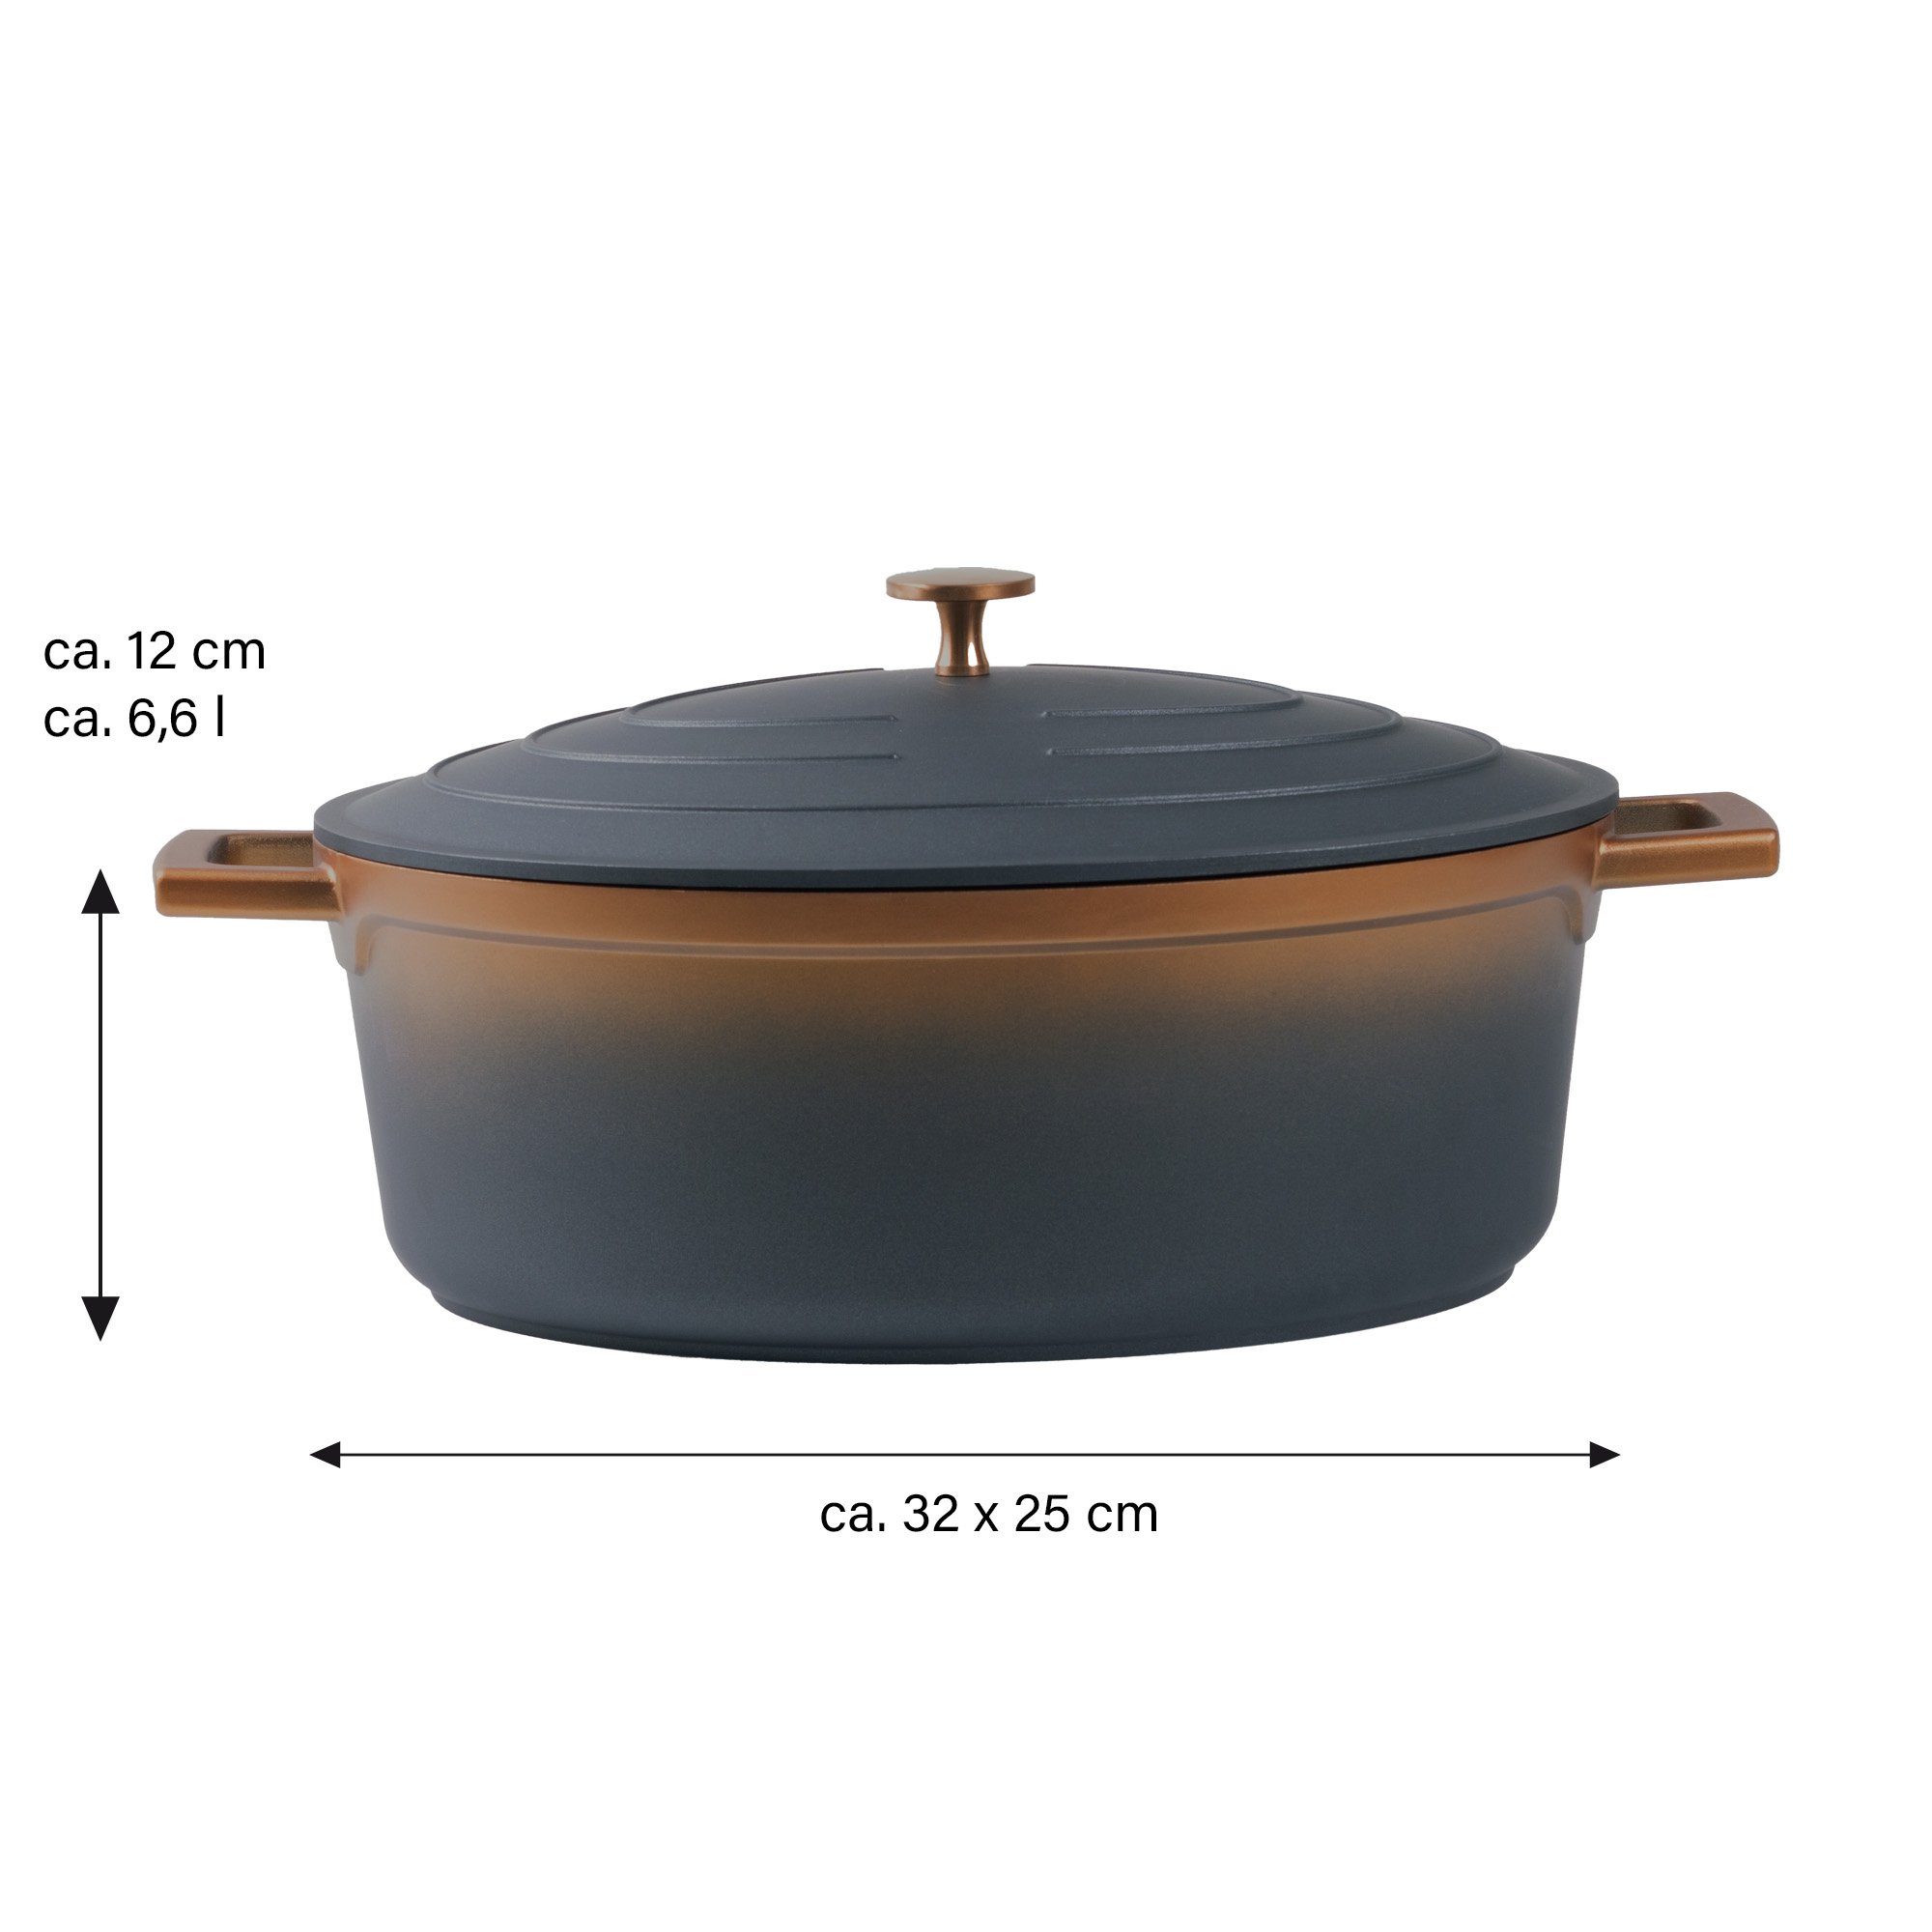 STONELINE® Roségold Gourmet asador 32x25 cm con tapa, apto para horno e inducción, antiadherente